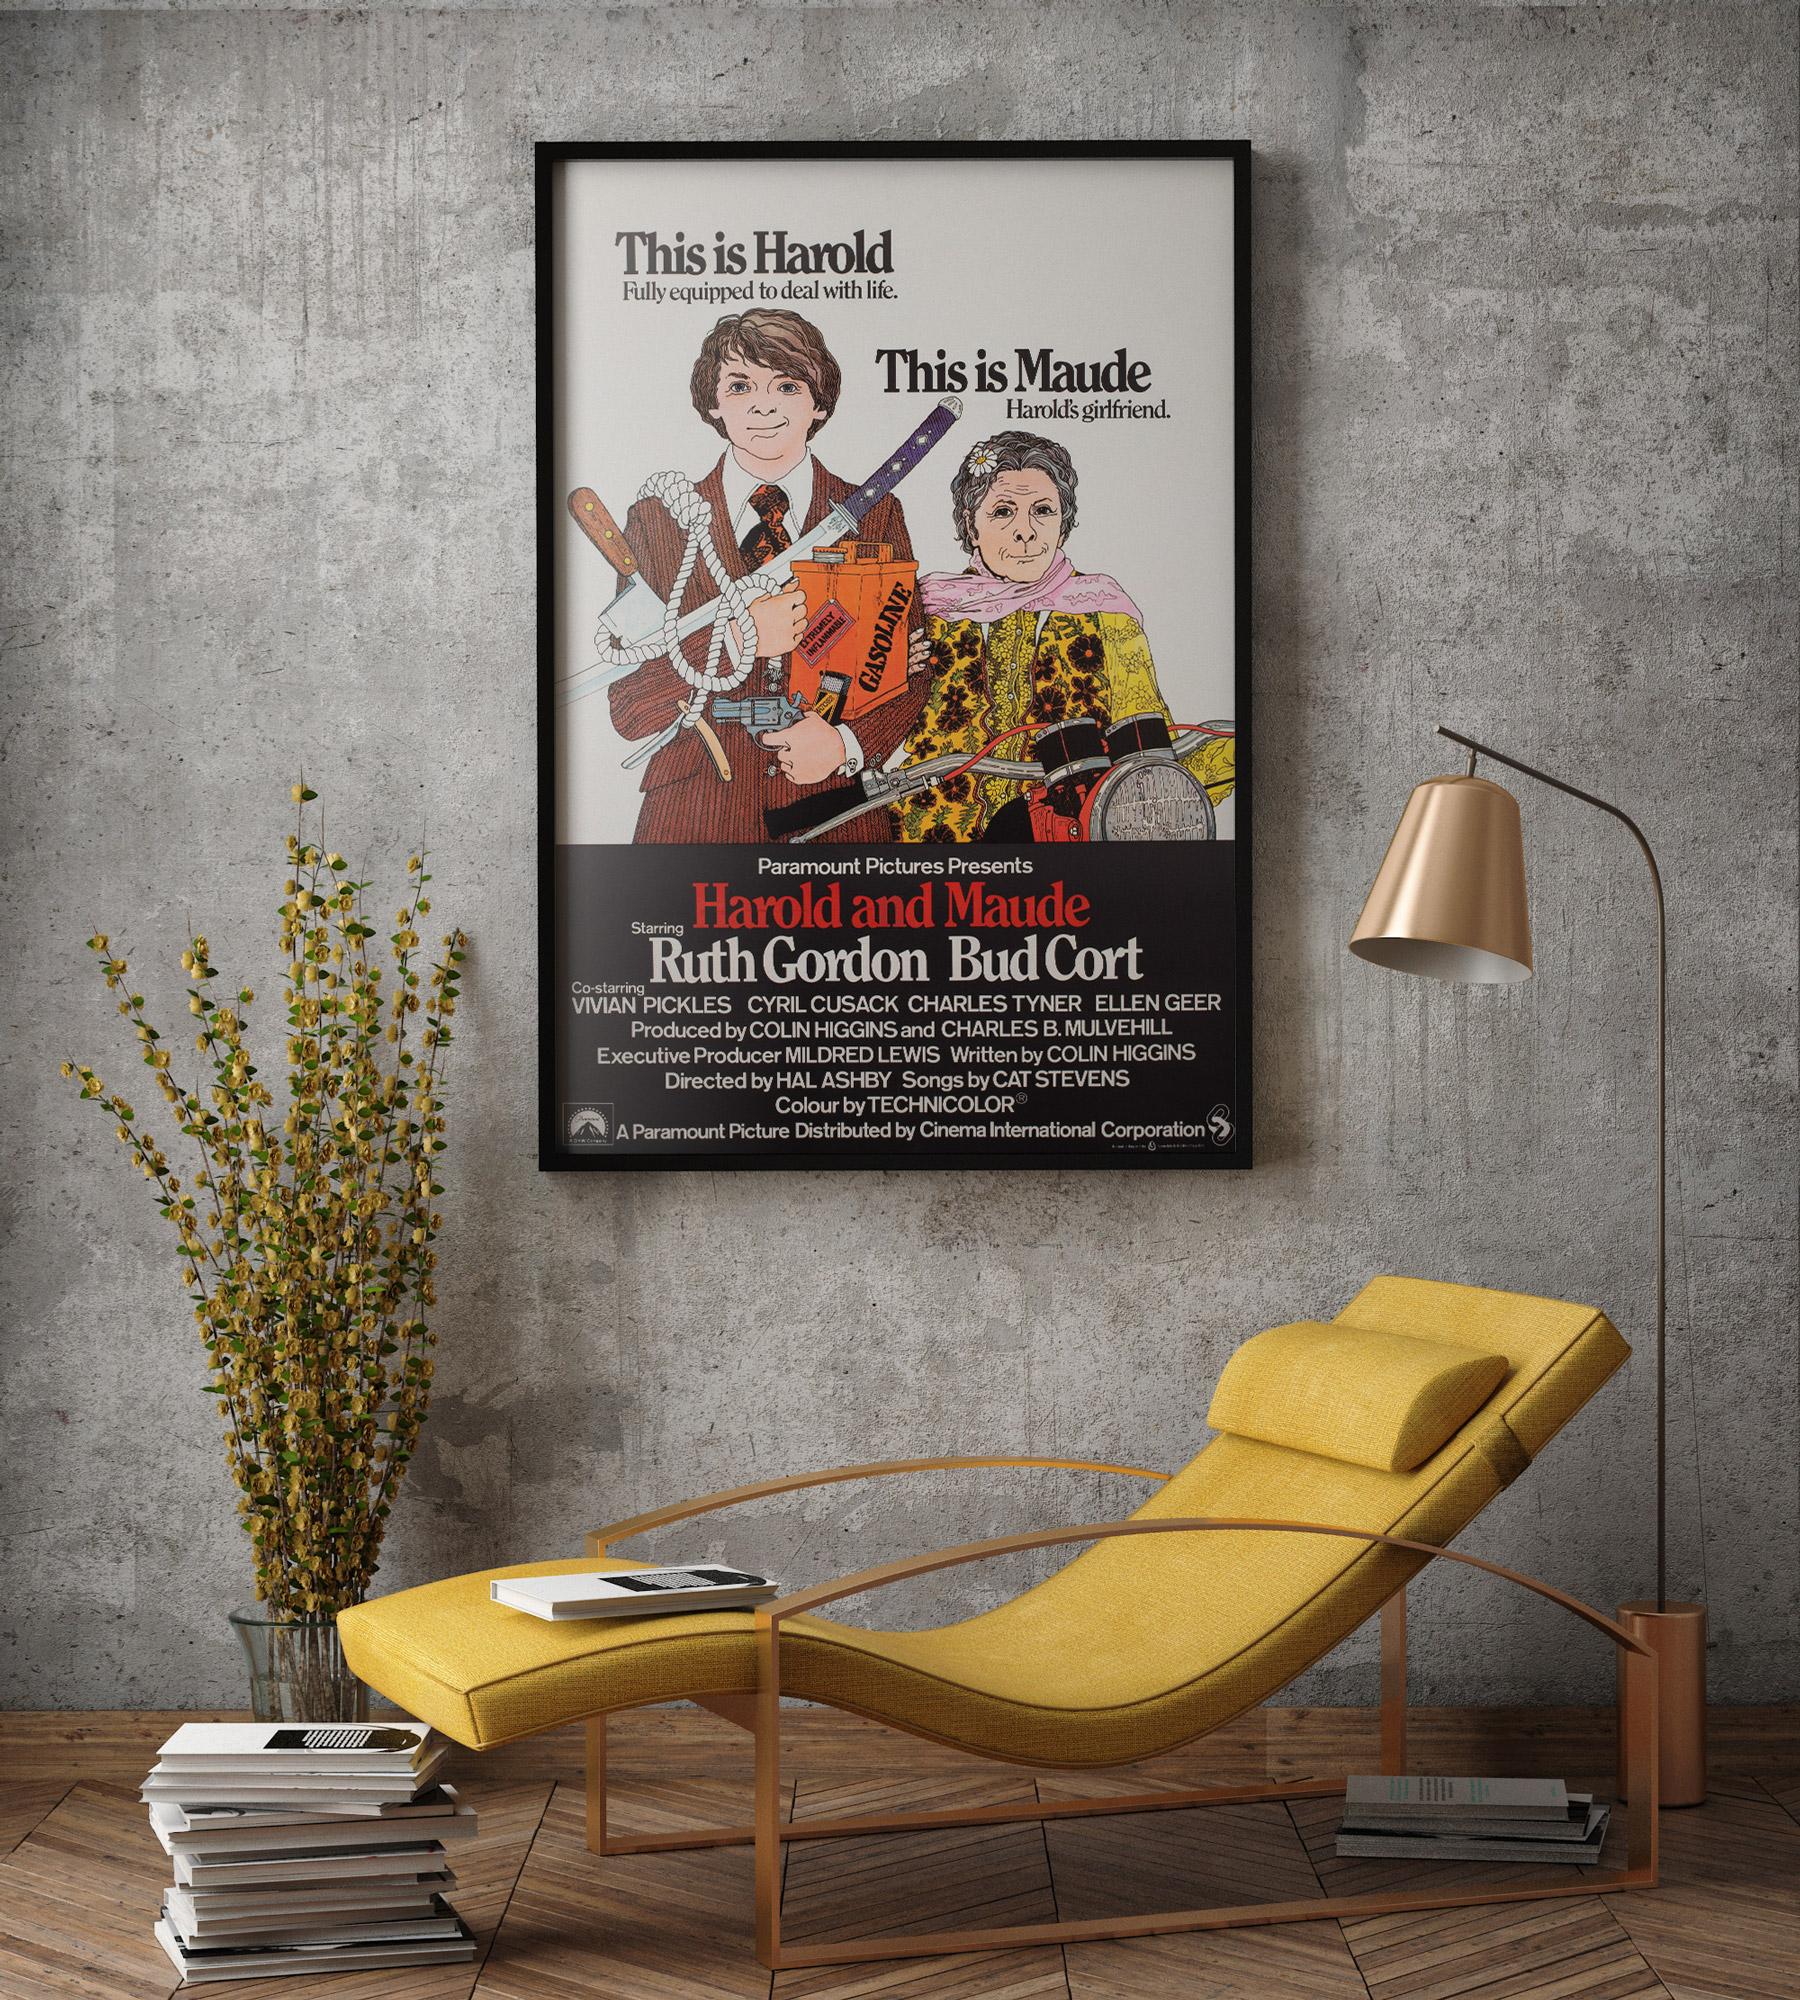 Magnifique affiche de film britannique originale pour la comédie romantique des années 70 Harold & Maude. Le UK 1 Sheet présente sans doute la meilleure illustration du titre. Une affiche très rare et de collection dans un état fantastique.

Cette